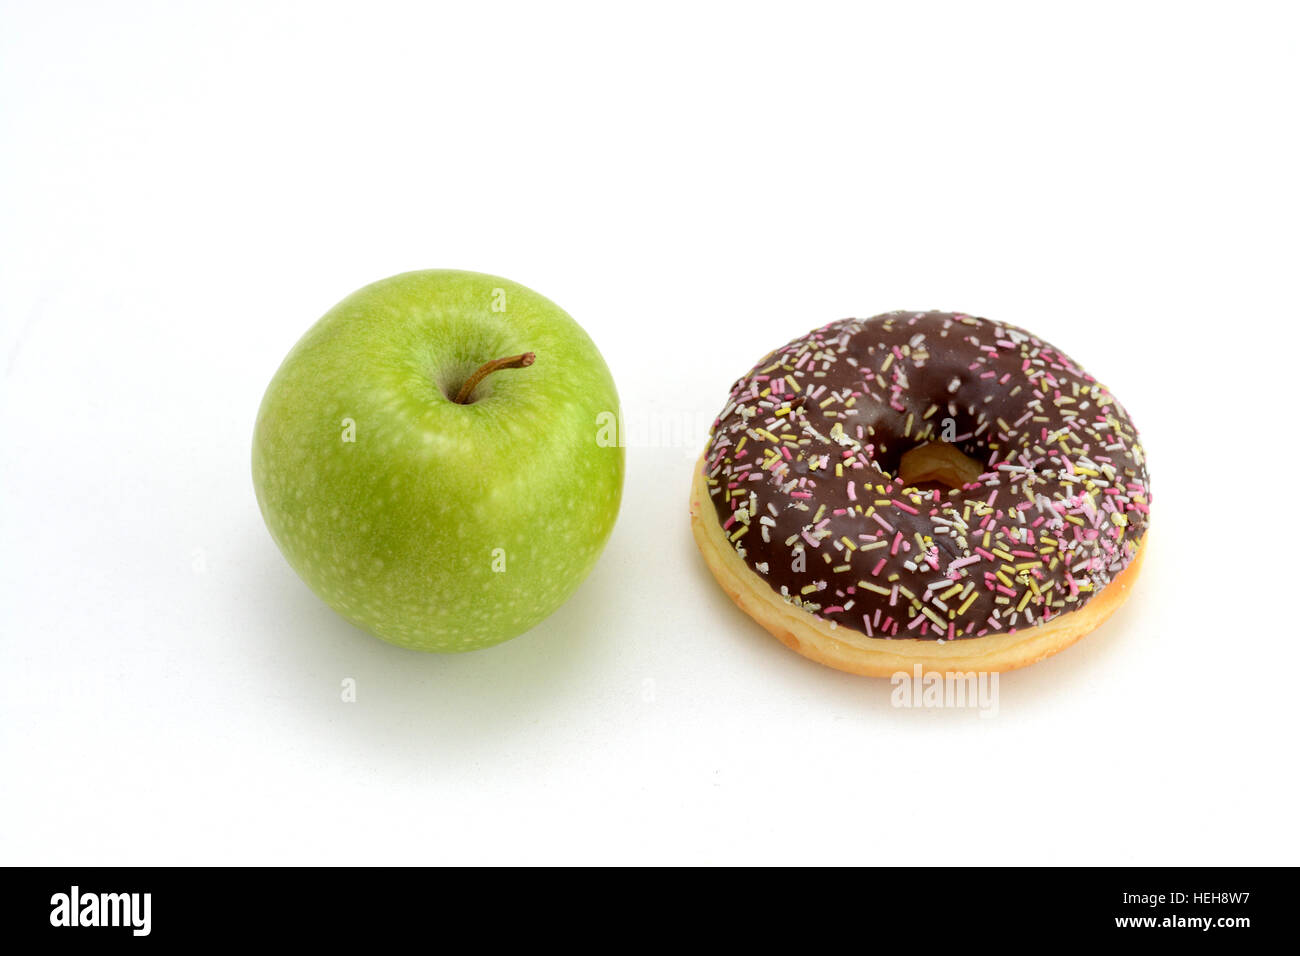 Die Wahl zwischen gesunden Früchten und Süßigkeiten. Grüner Apfel und leckere Schoko donut Stockfoto